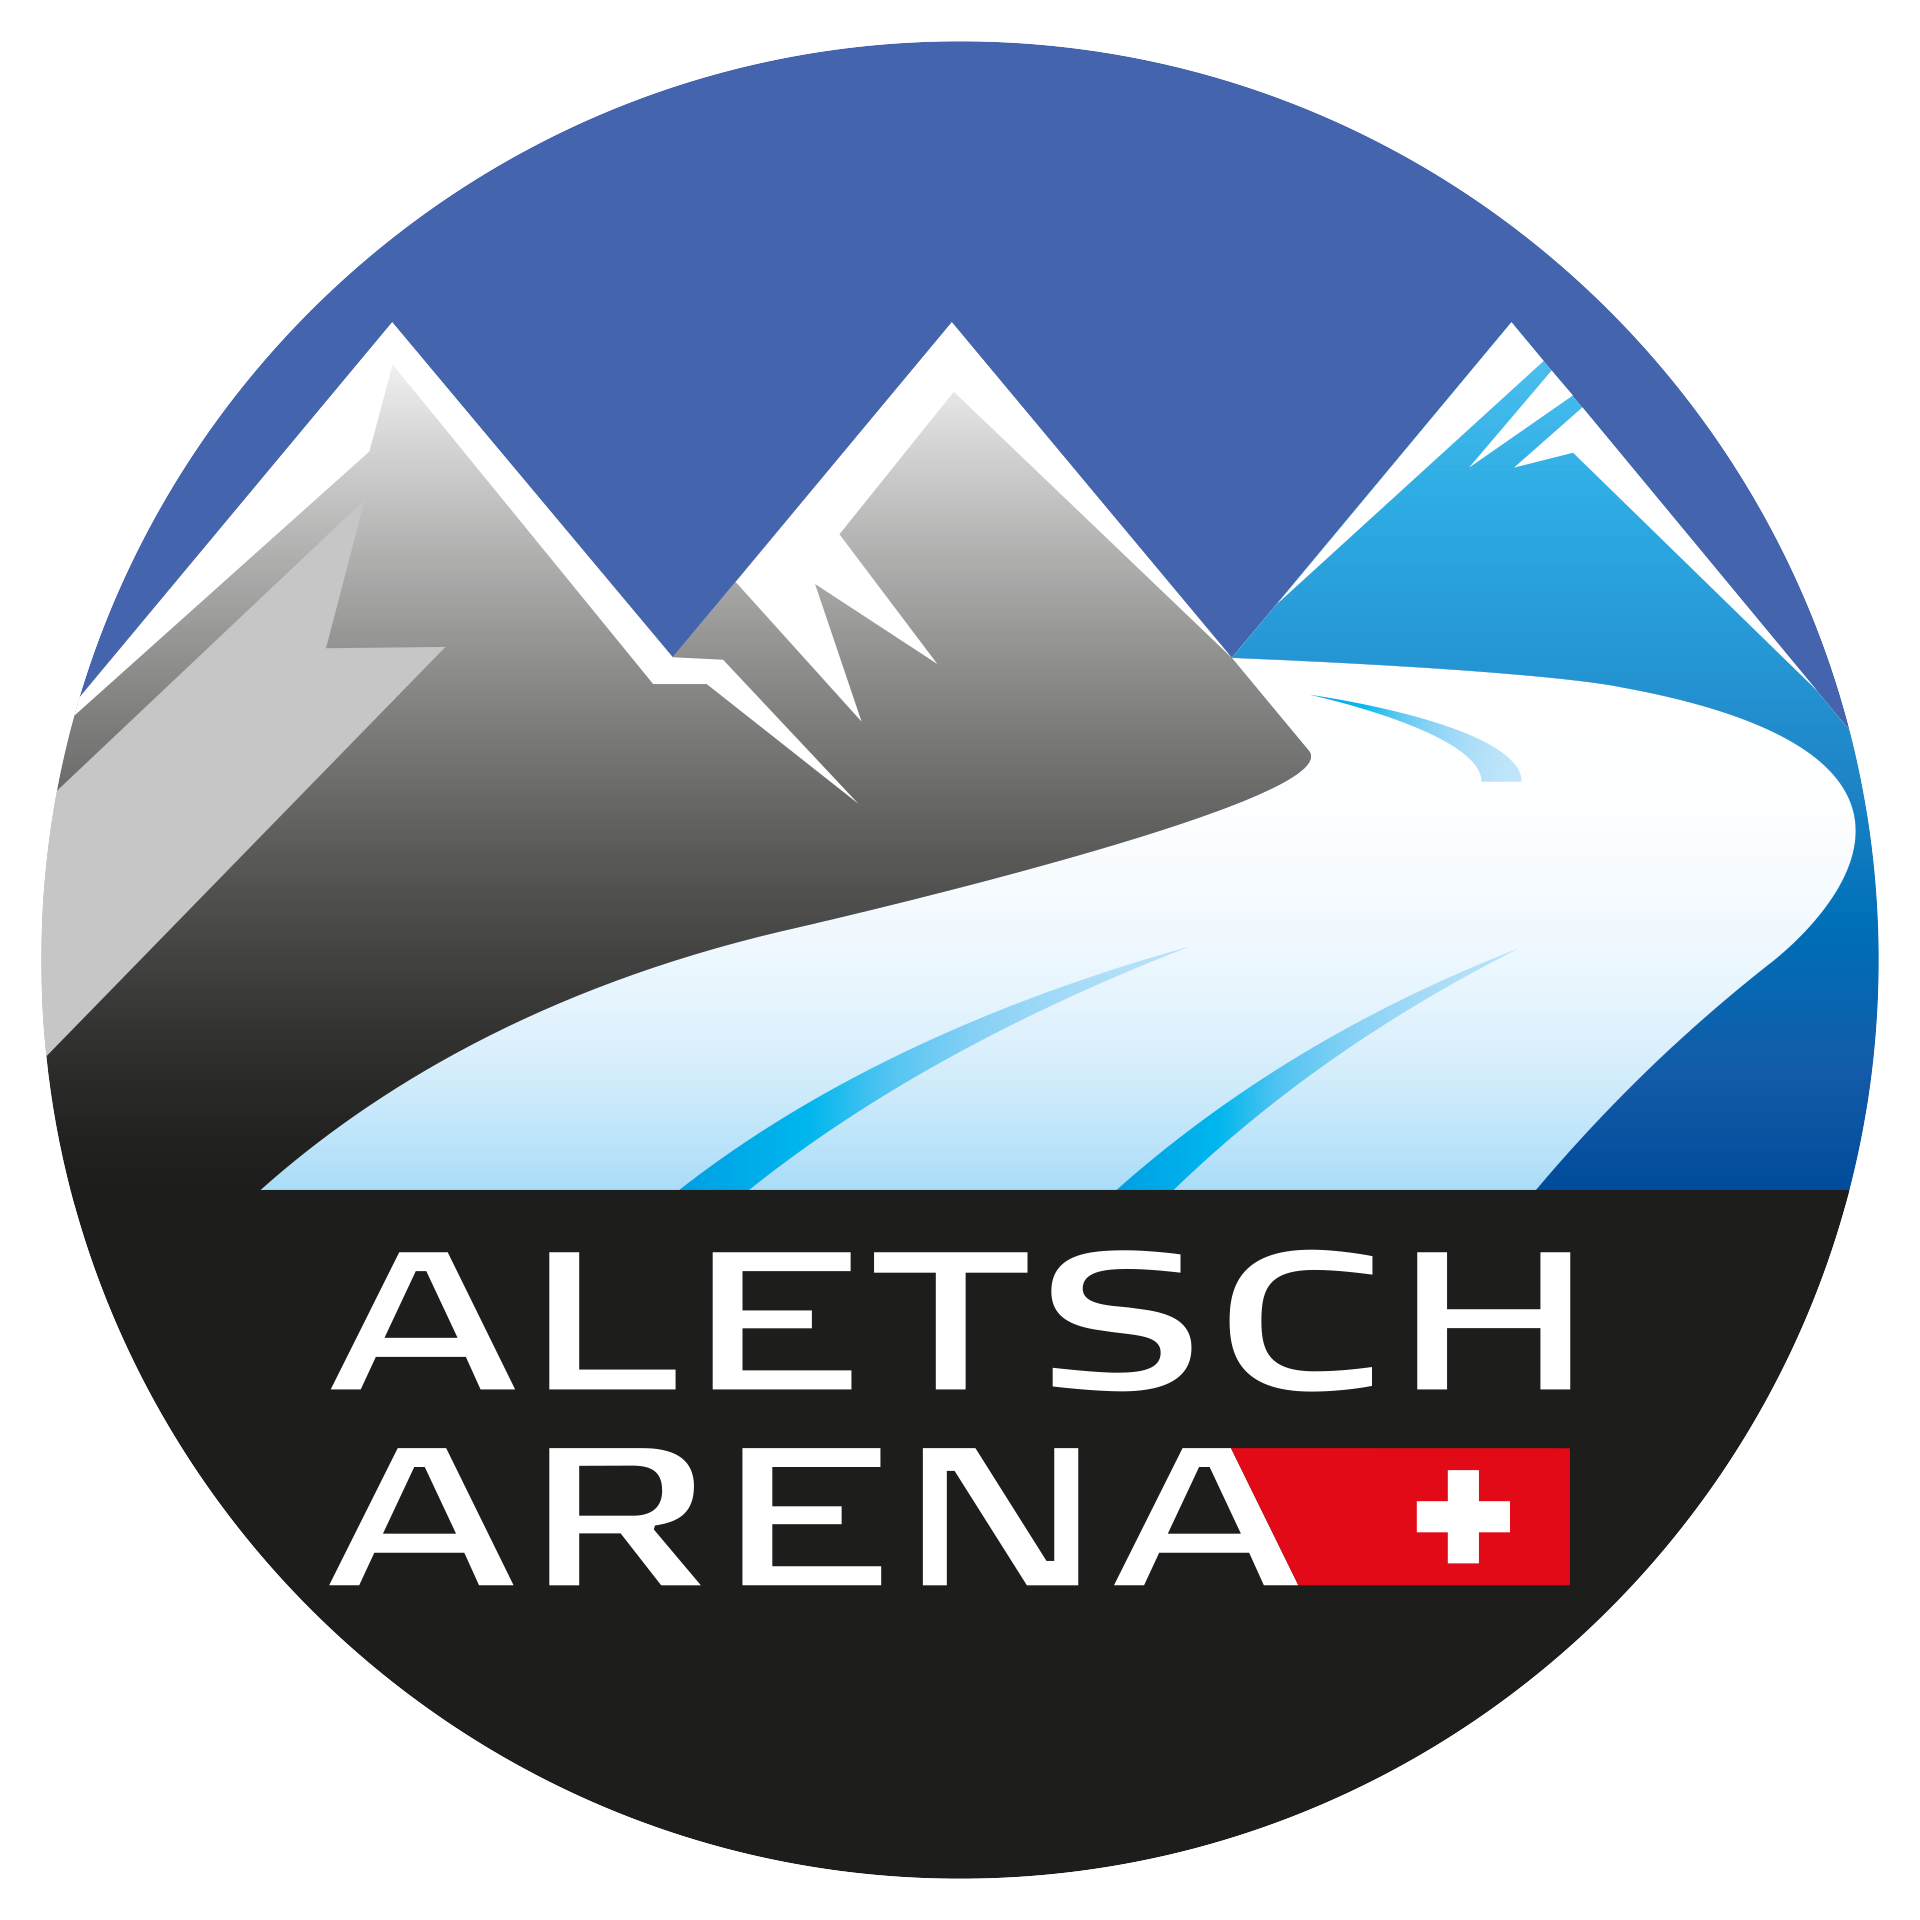 alpenverein oeav.cz Aletsch Arena